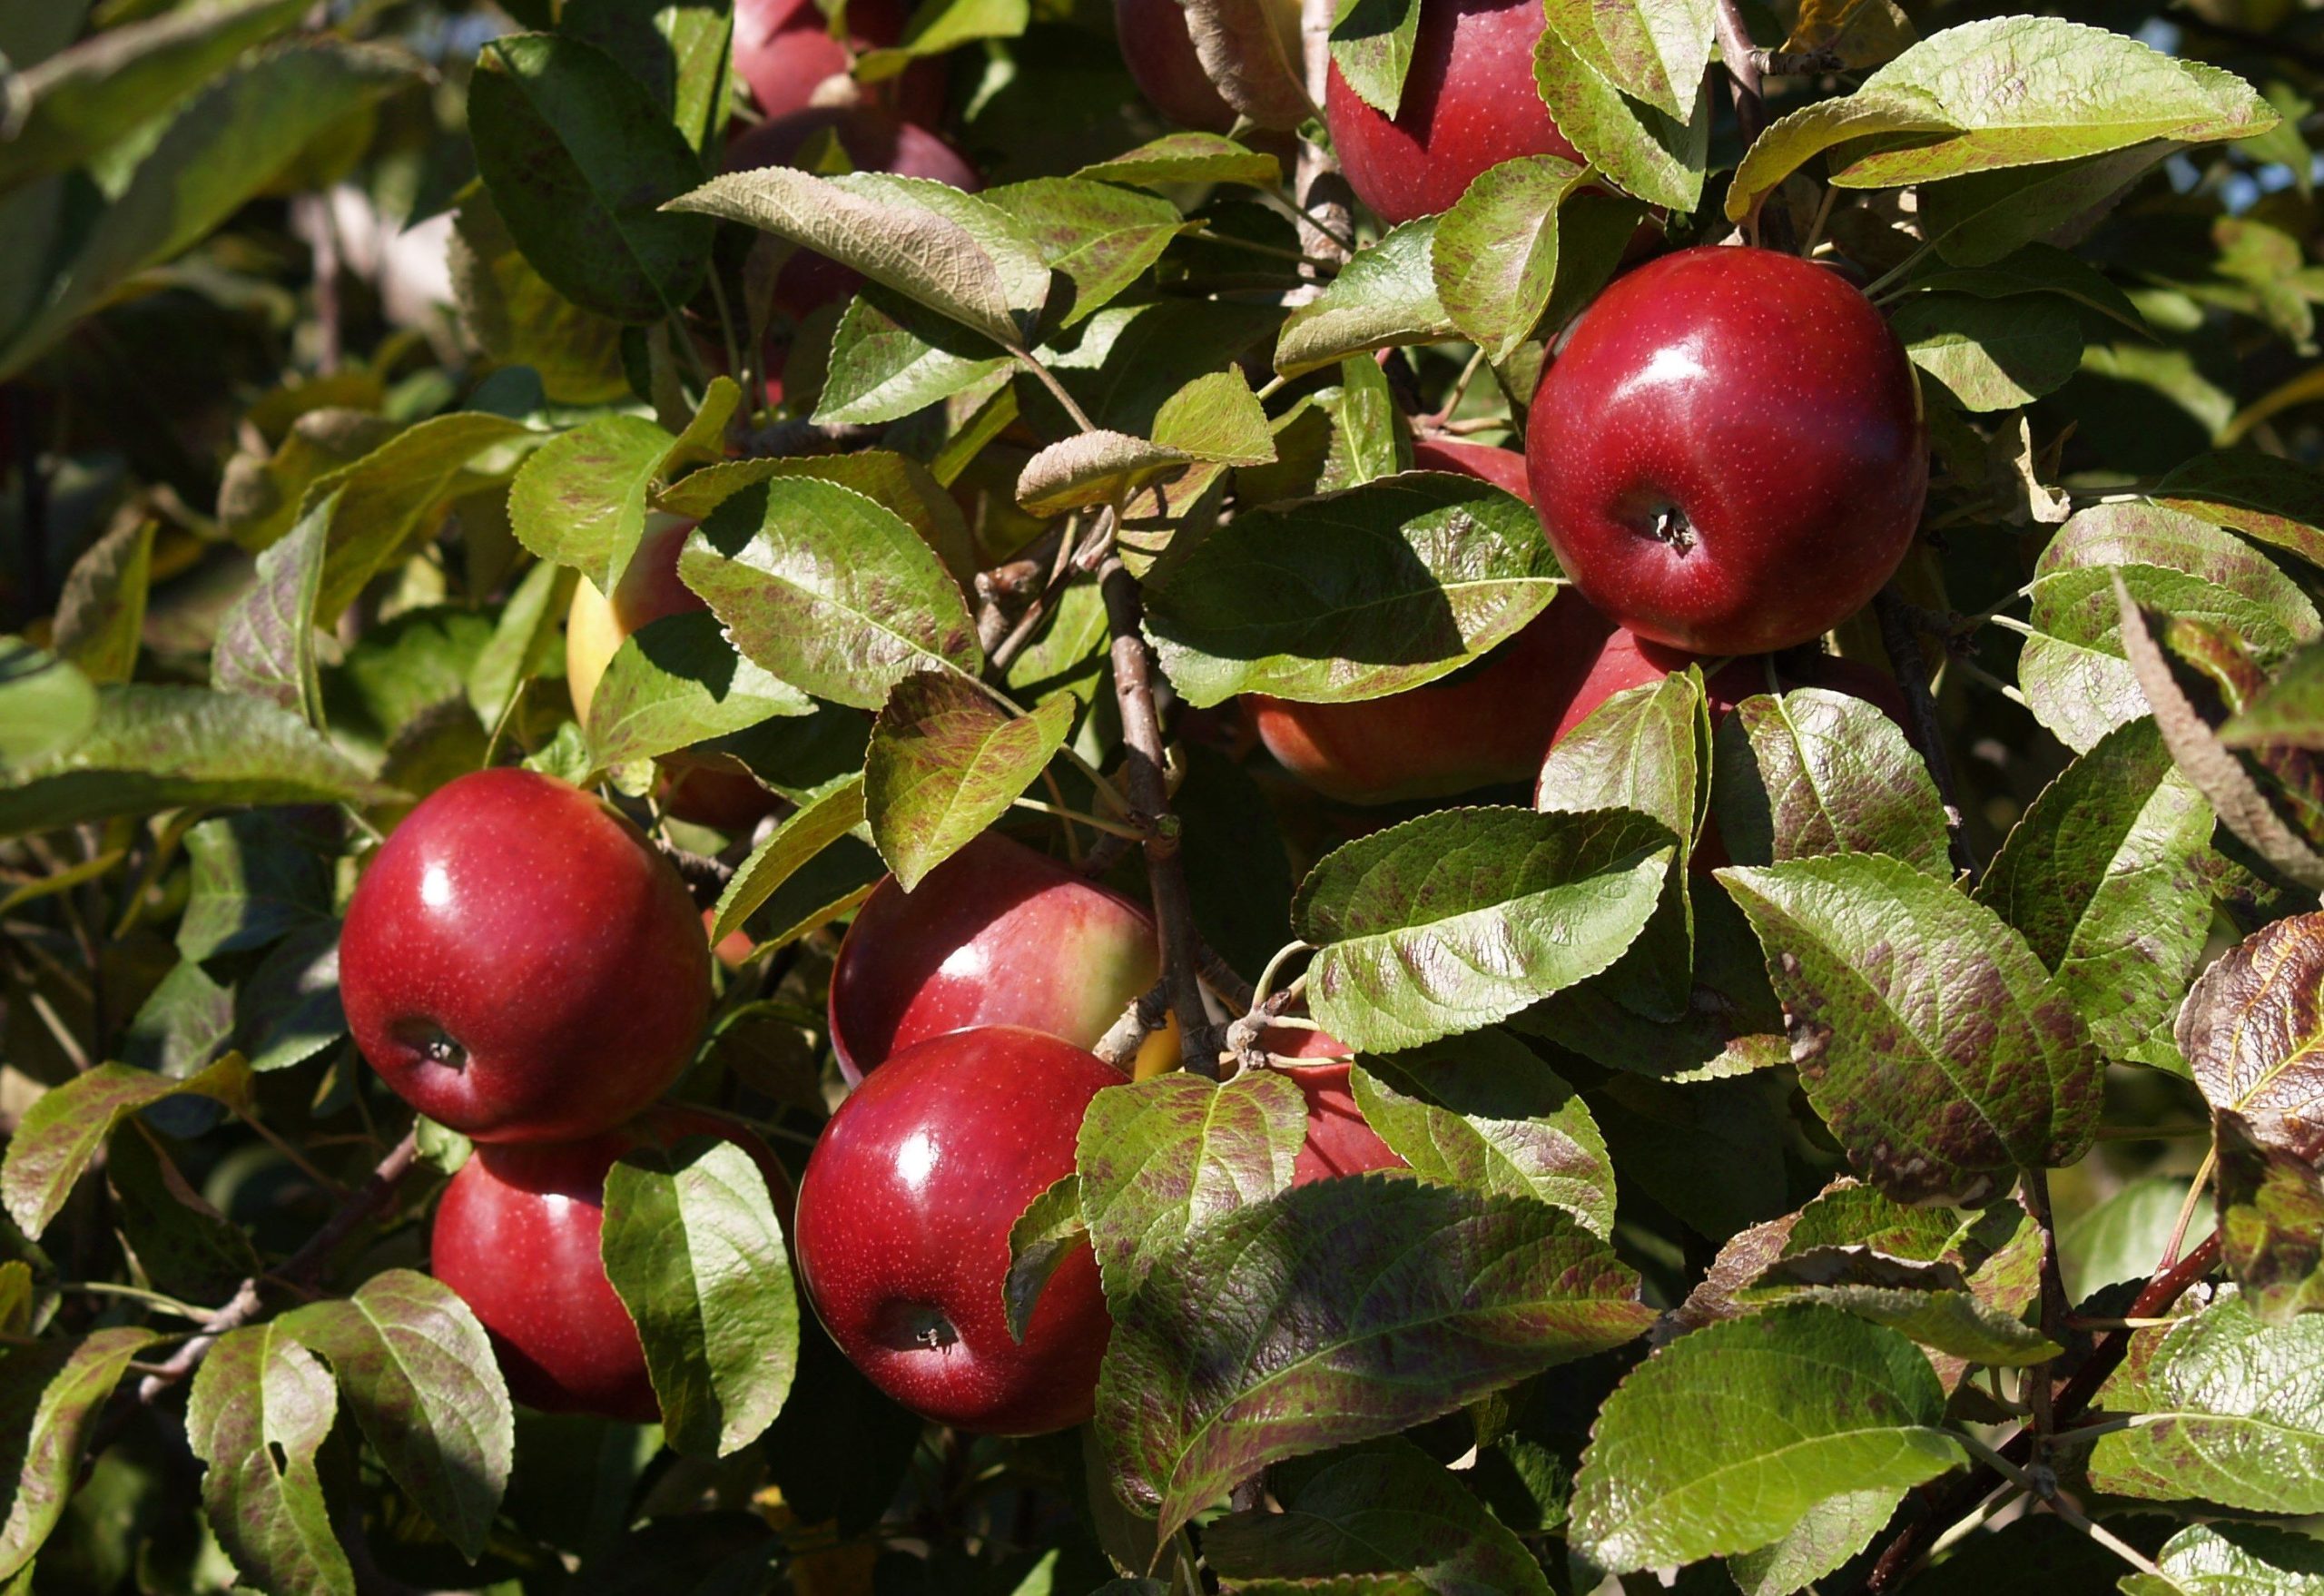 Fiesta apple trees for sale